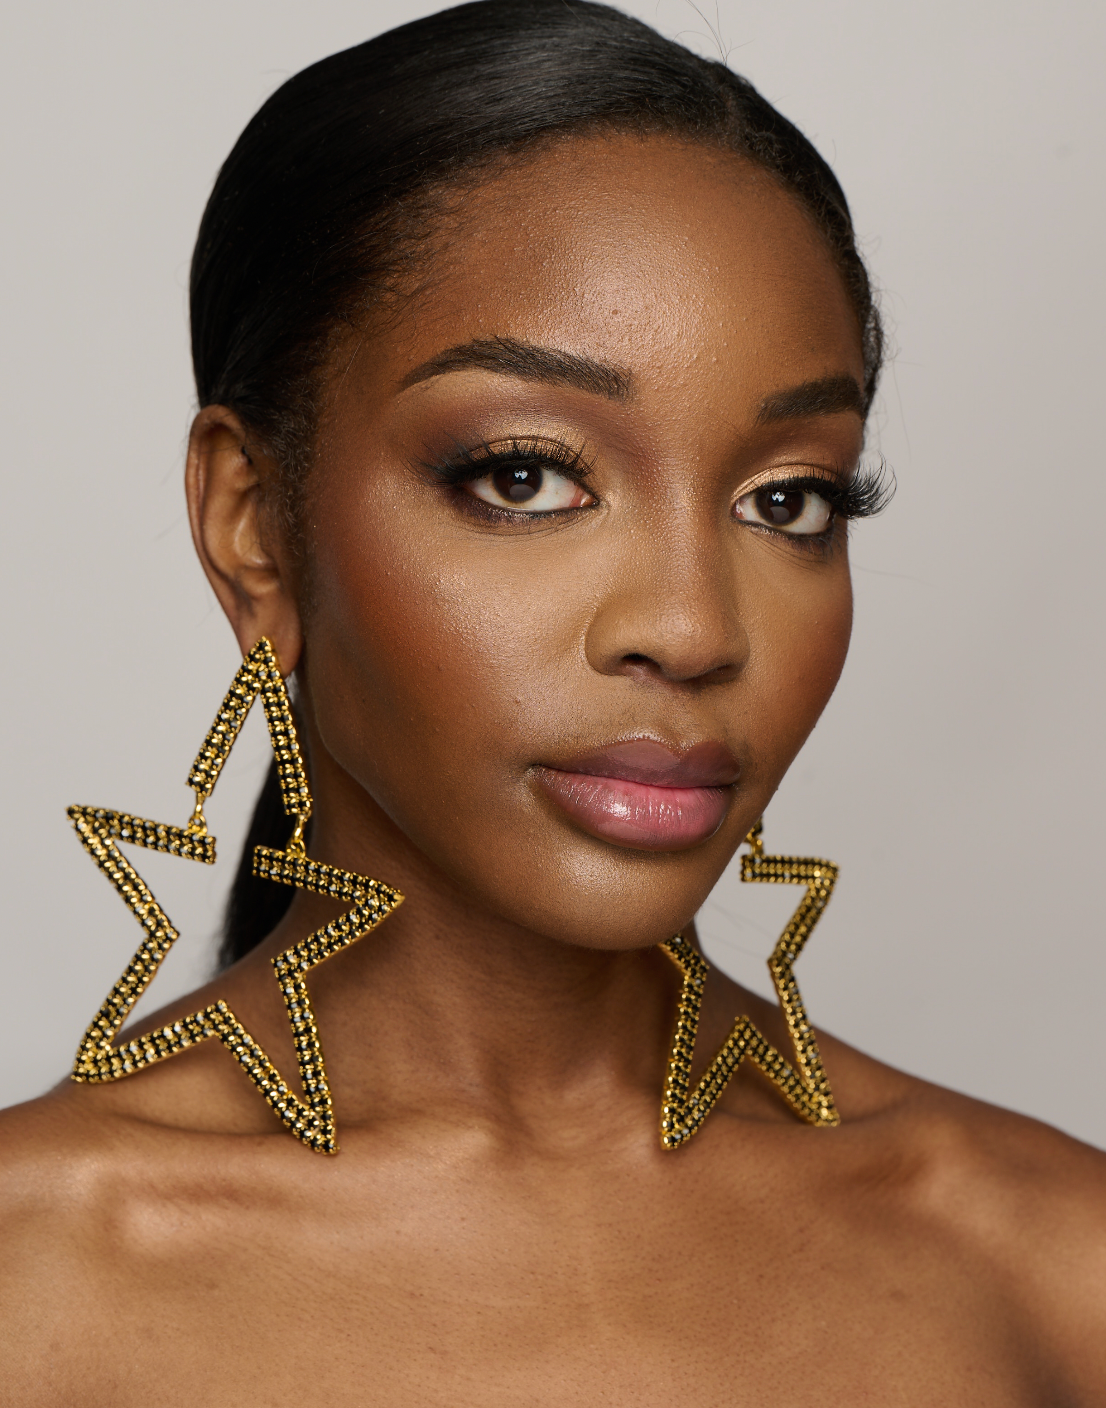 Large Luxury Glamorous Star Crystal Rhinestones Statement Stud Earrings